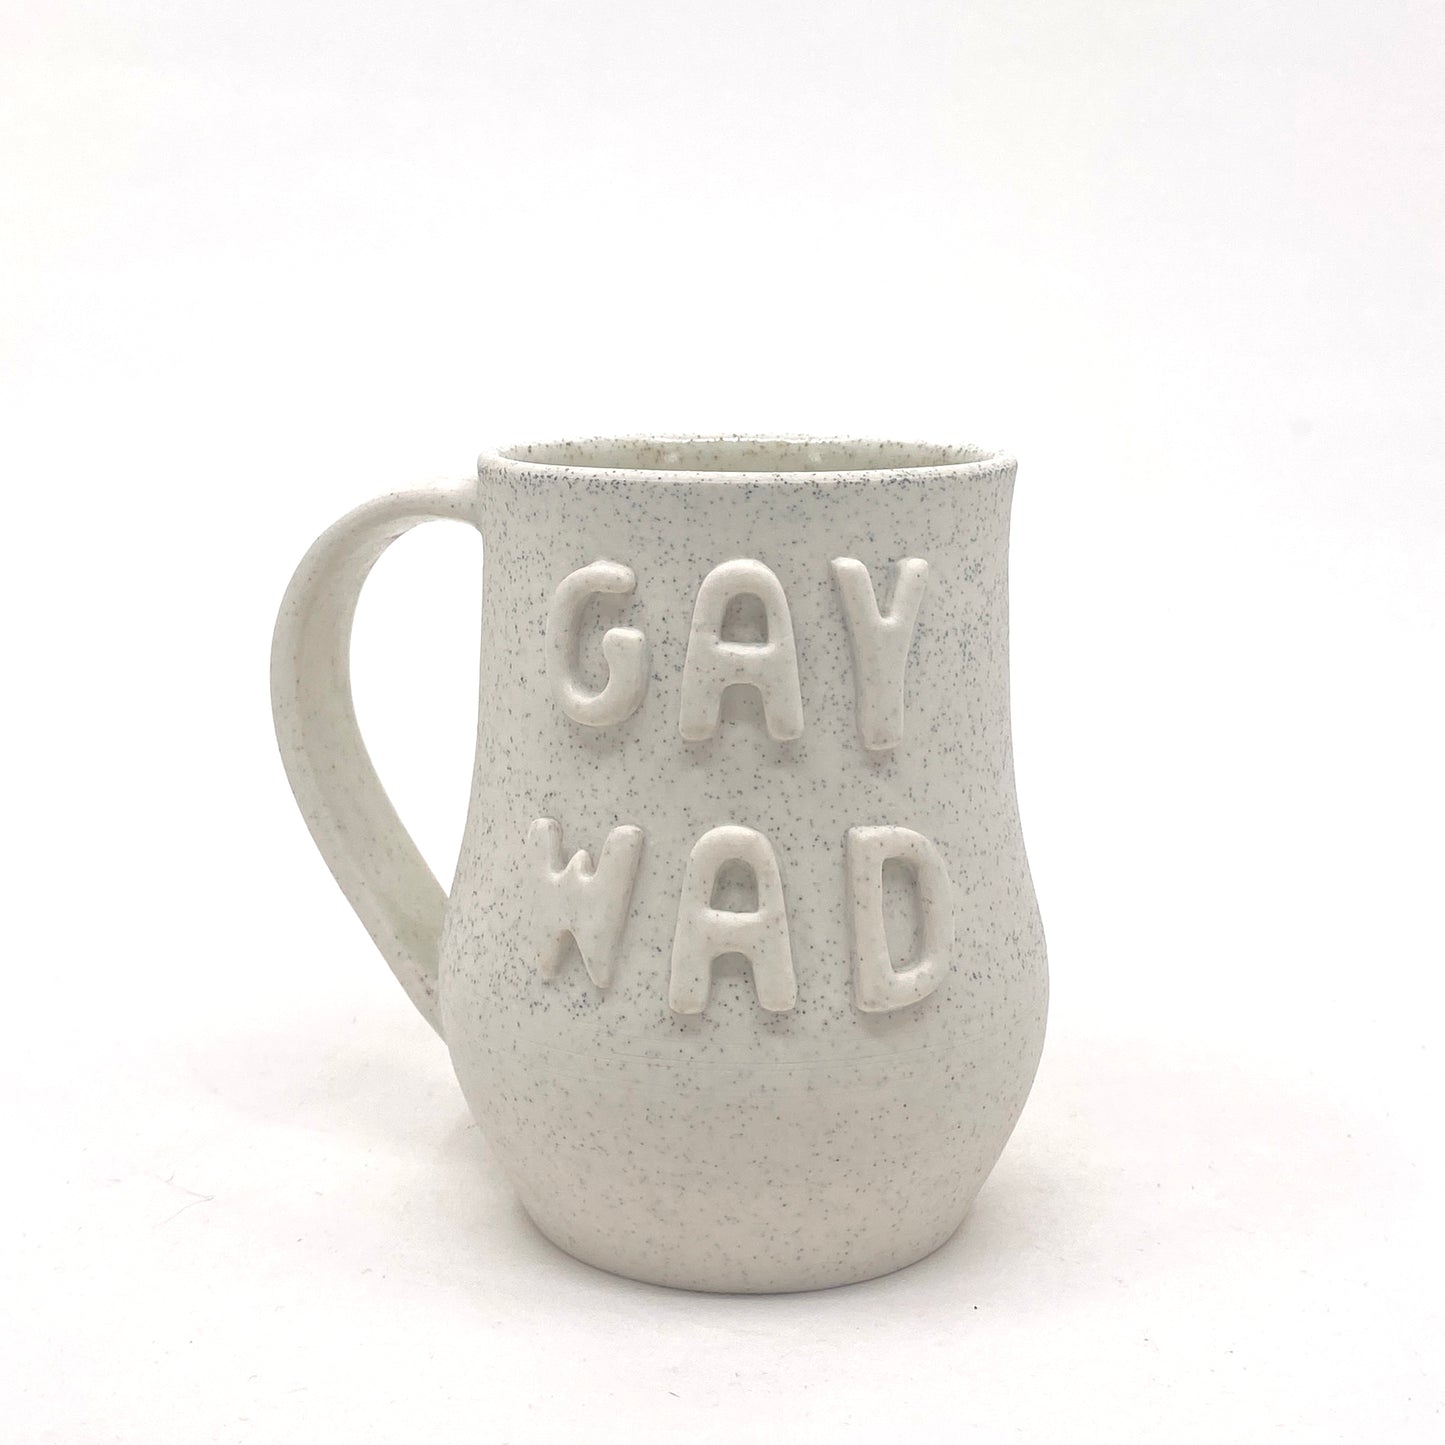 Gay Wad Mug